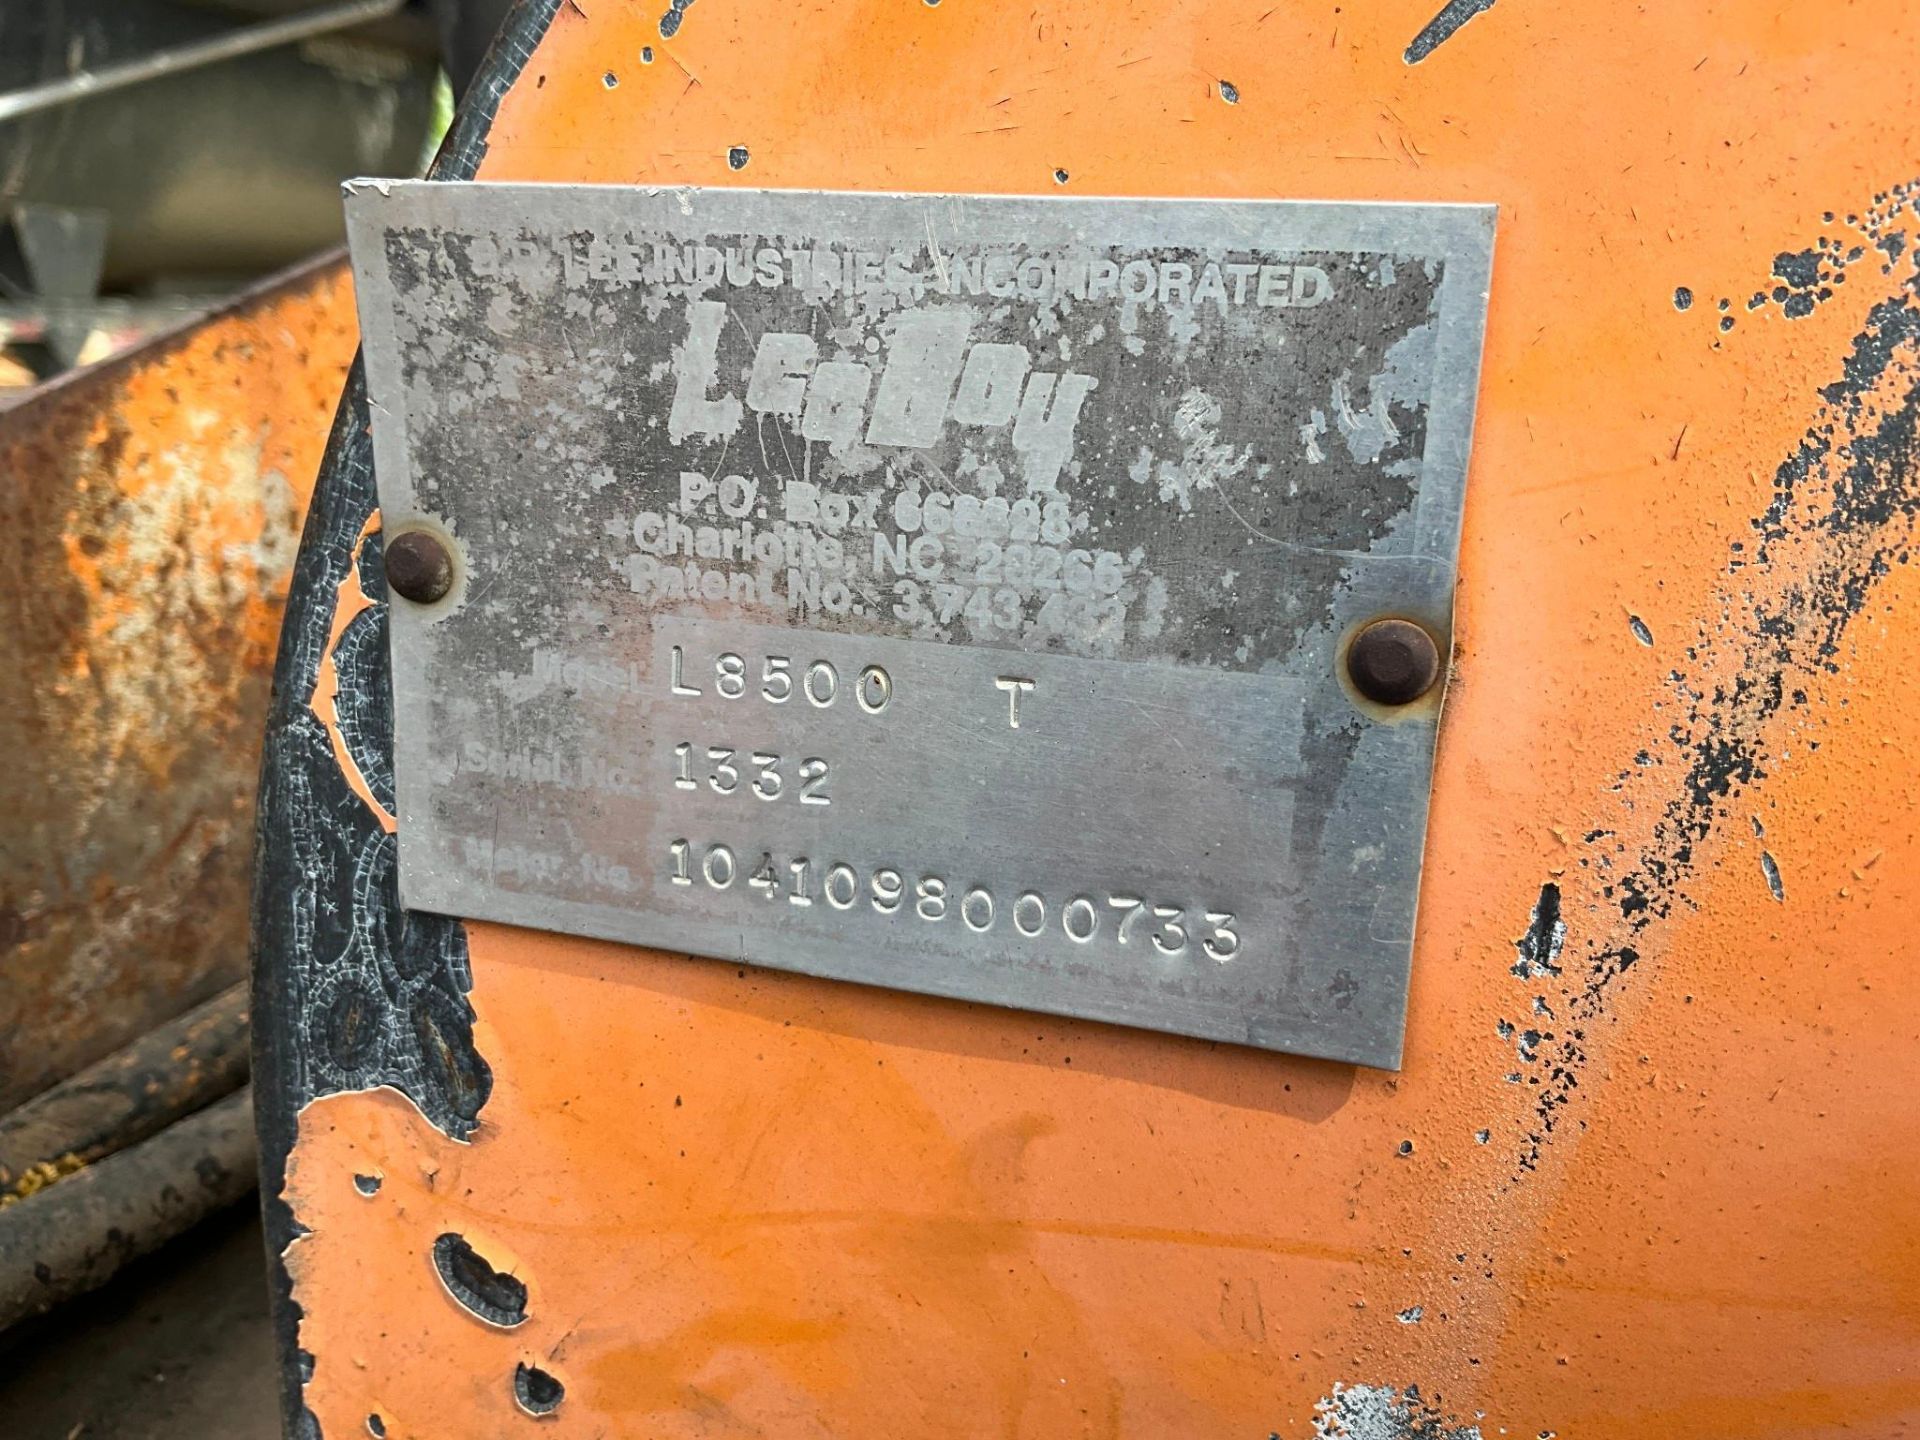 LEE BOY L8500 T TRACK ASPHALT PAVER - Image 10 of 12